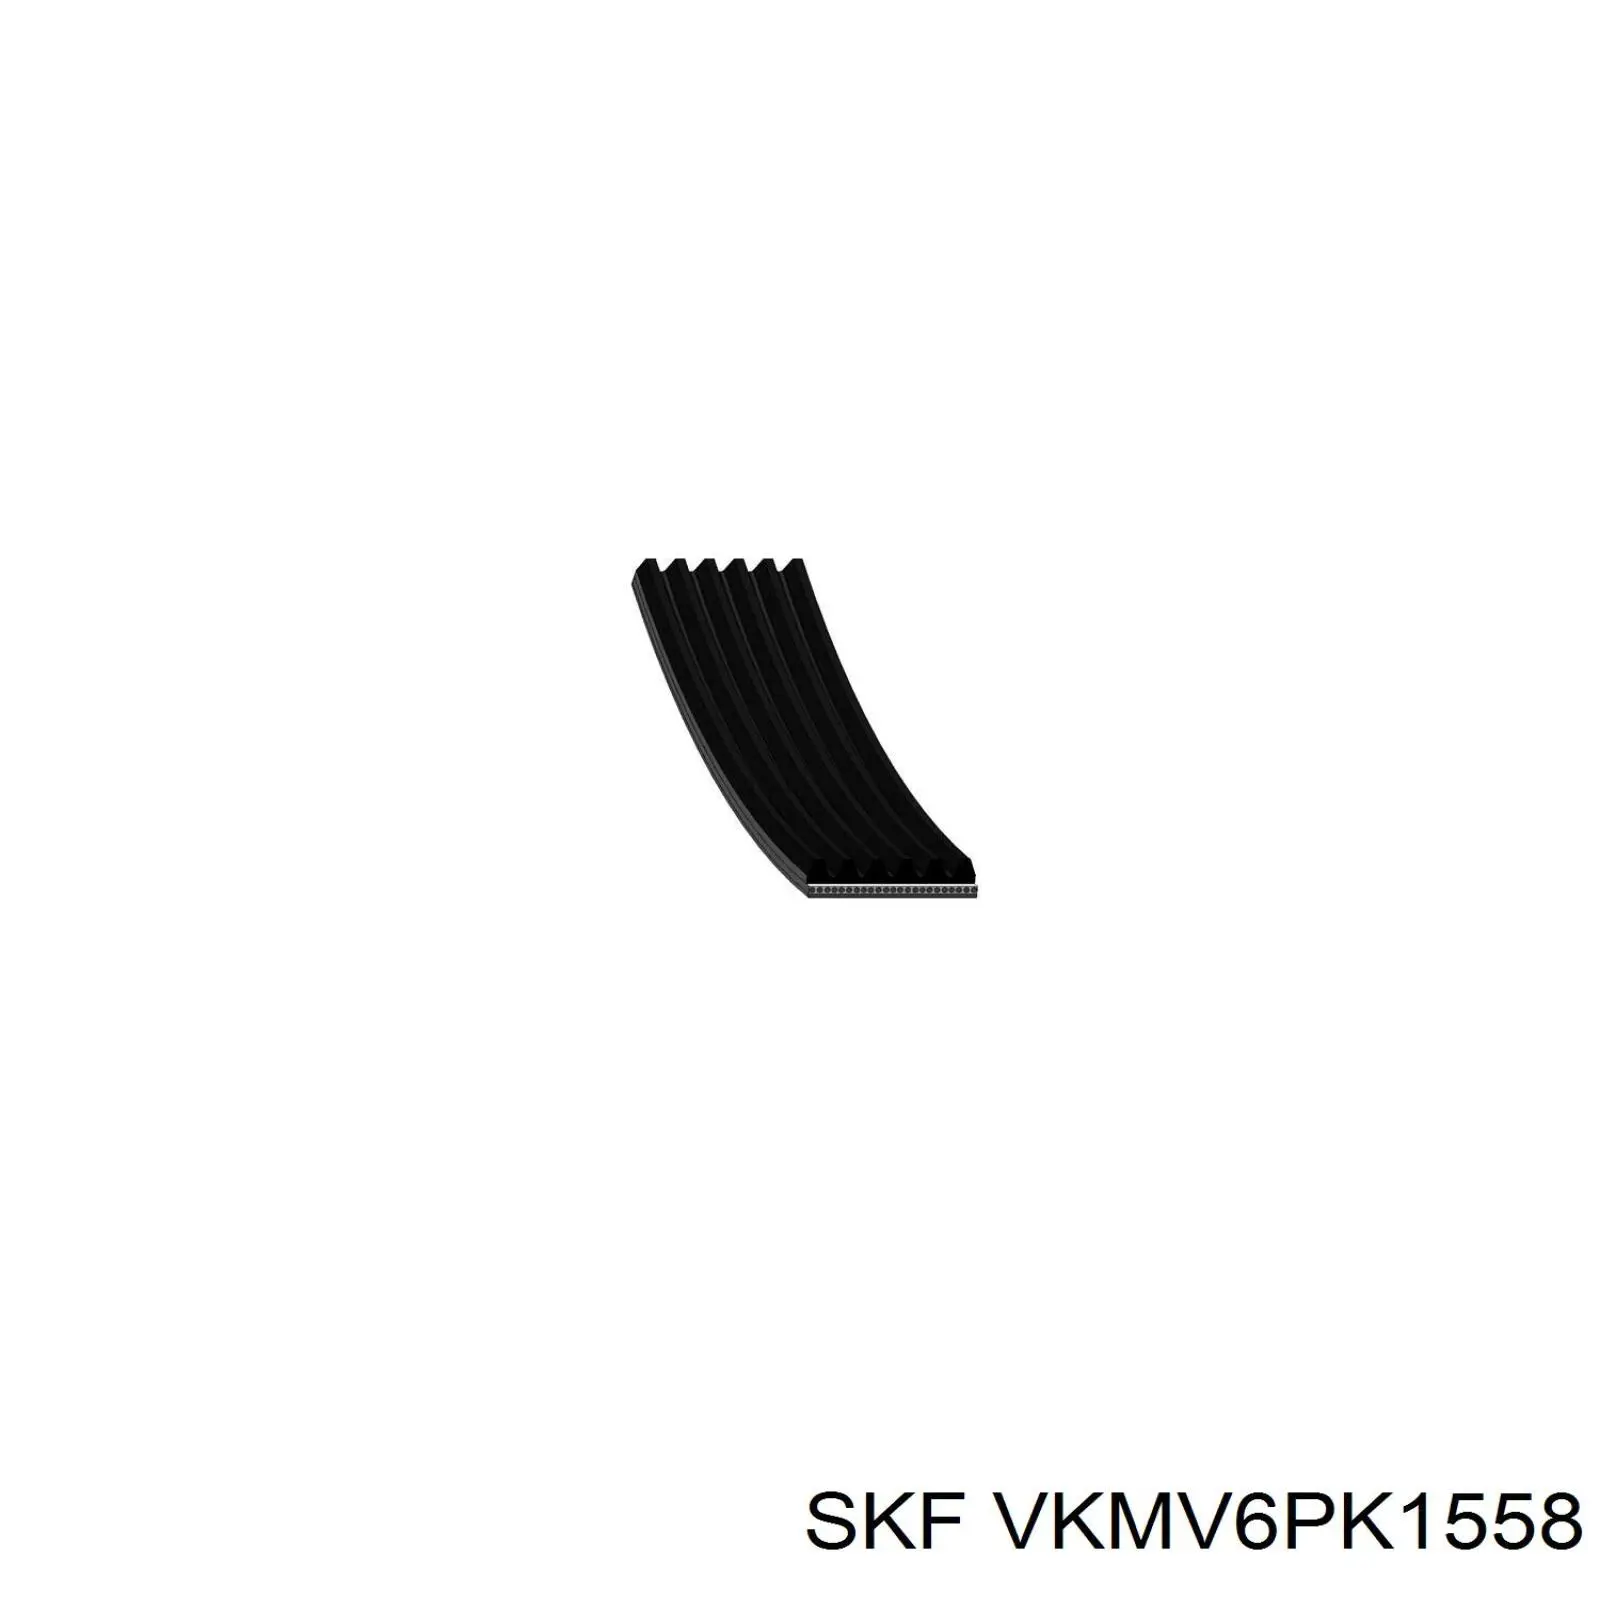 VKMV6PK1558 SKF correa trapezoidal